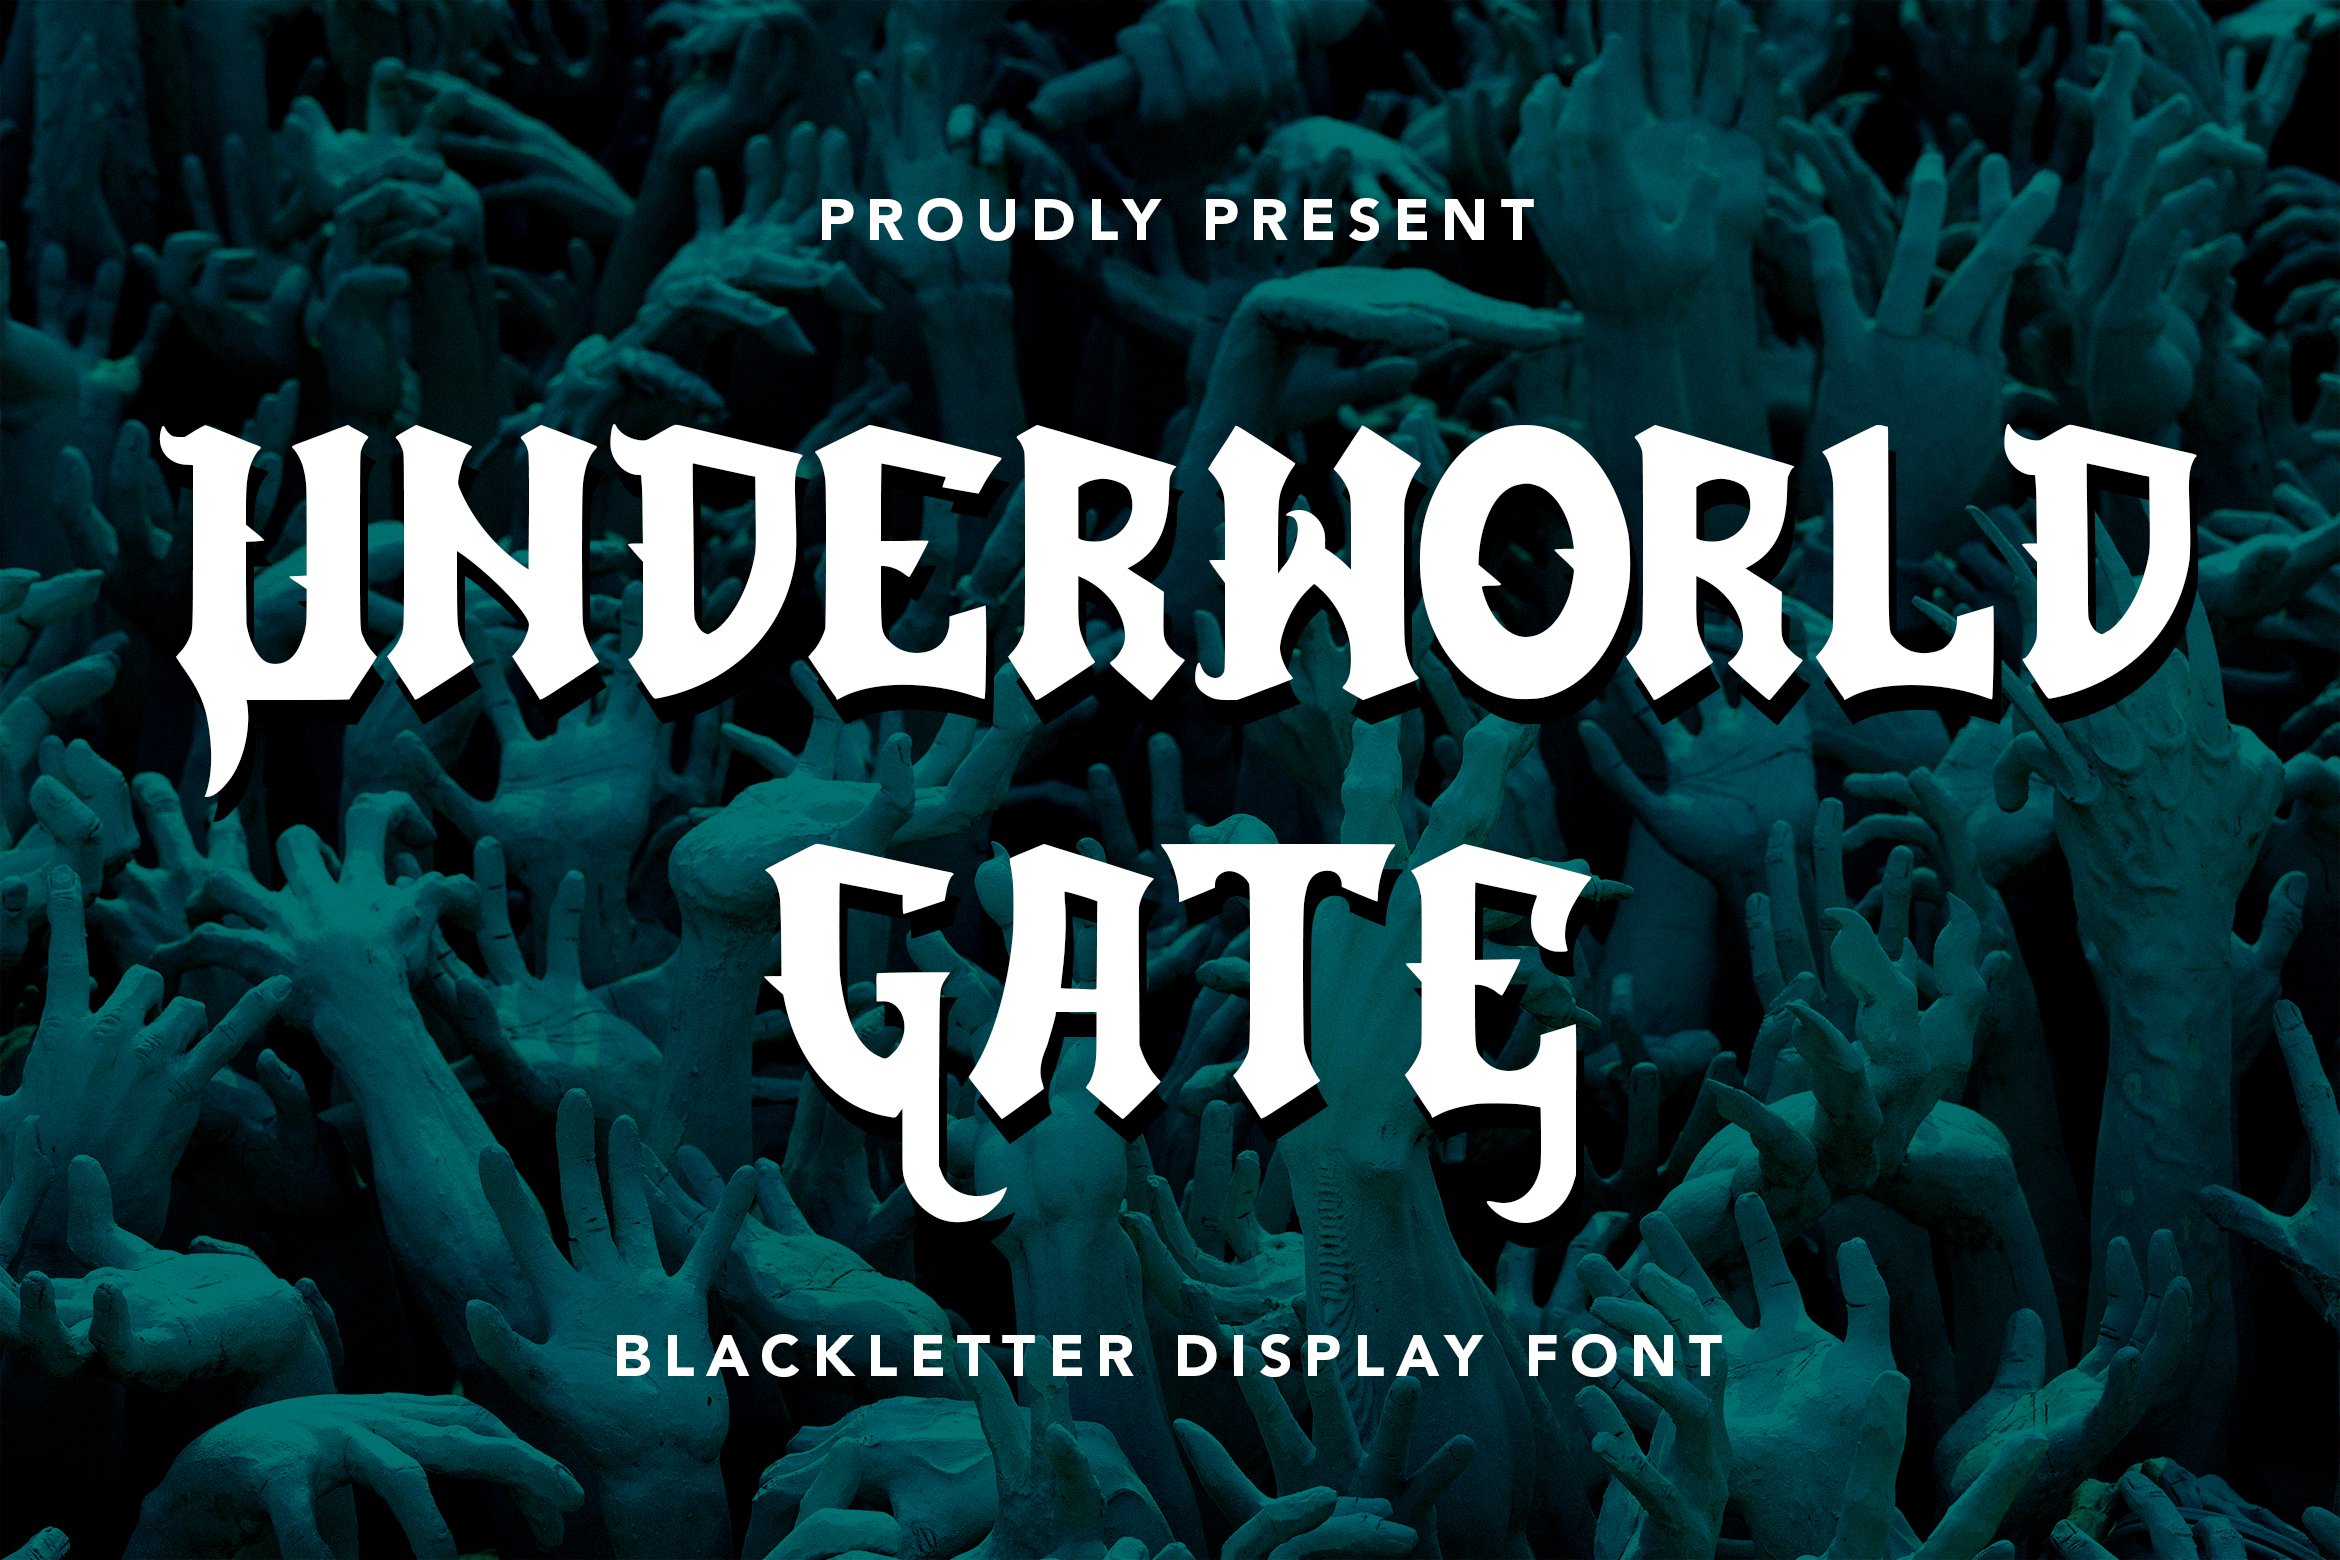 UnderworldGate - Blackletter Font cover image.